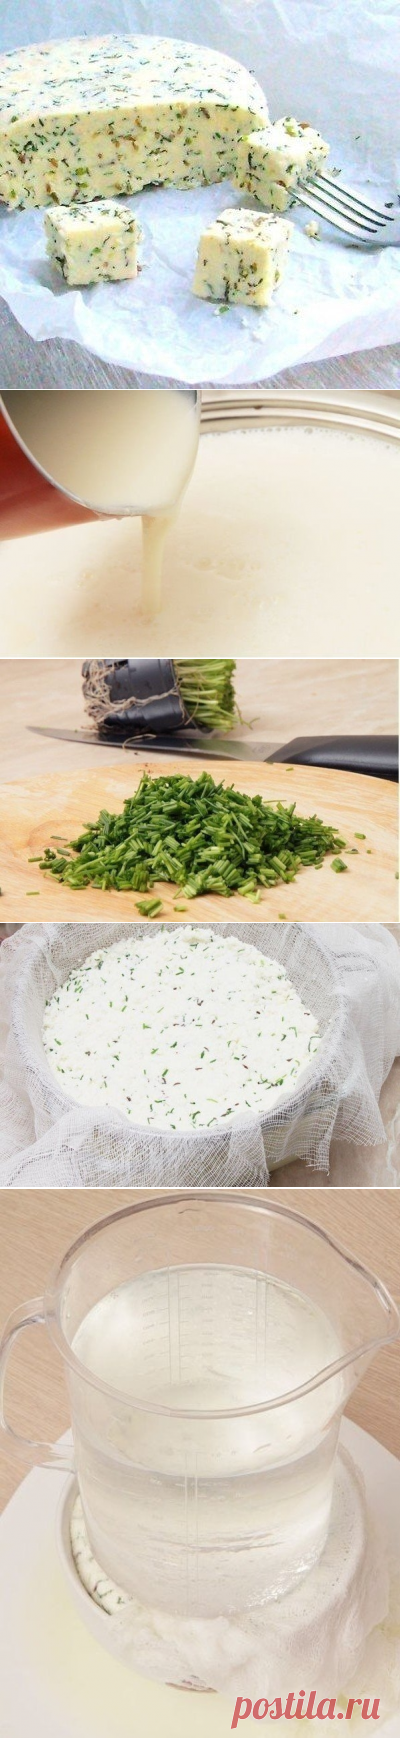 Как приготовить домашний сыр с тмином и зеленым луком - рецепт, ингредиенты и фотографии